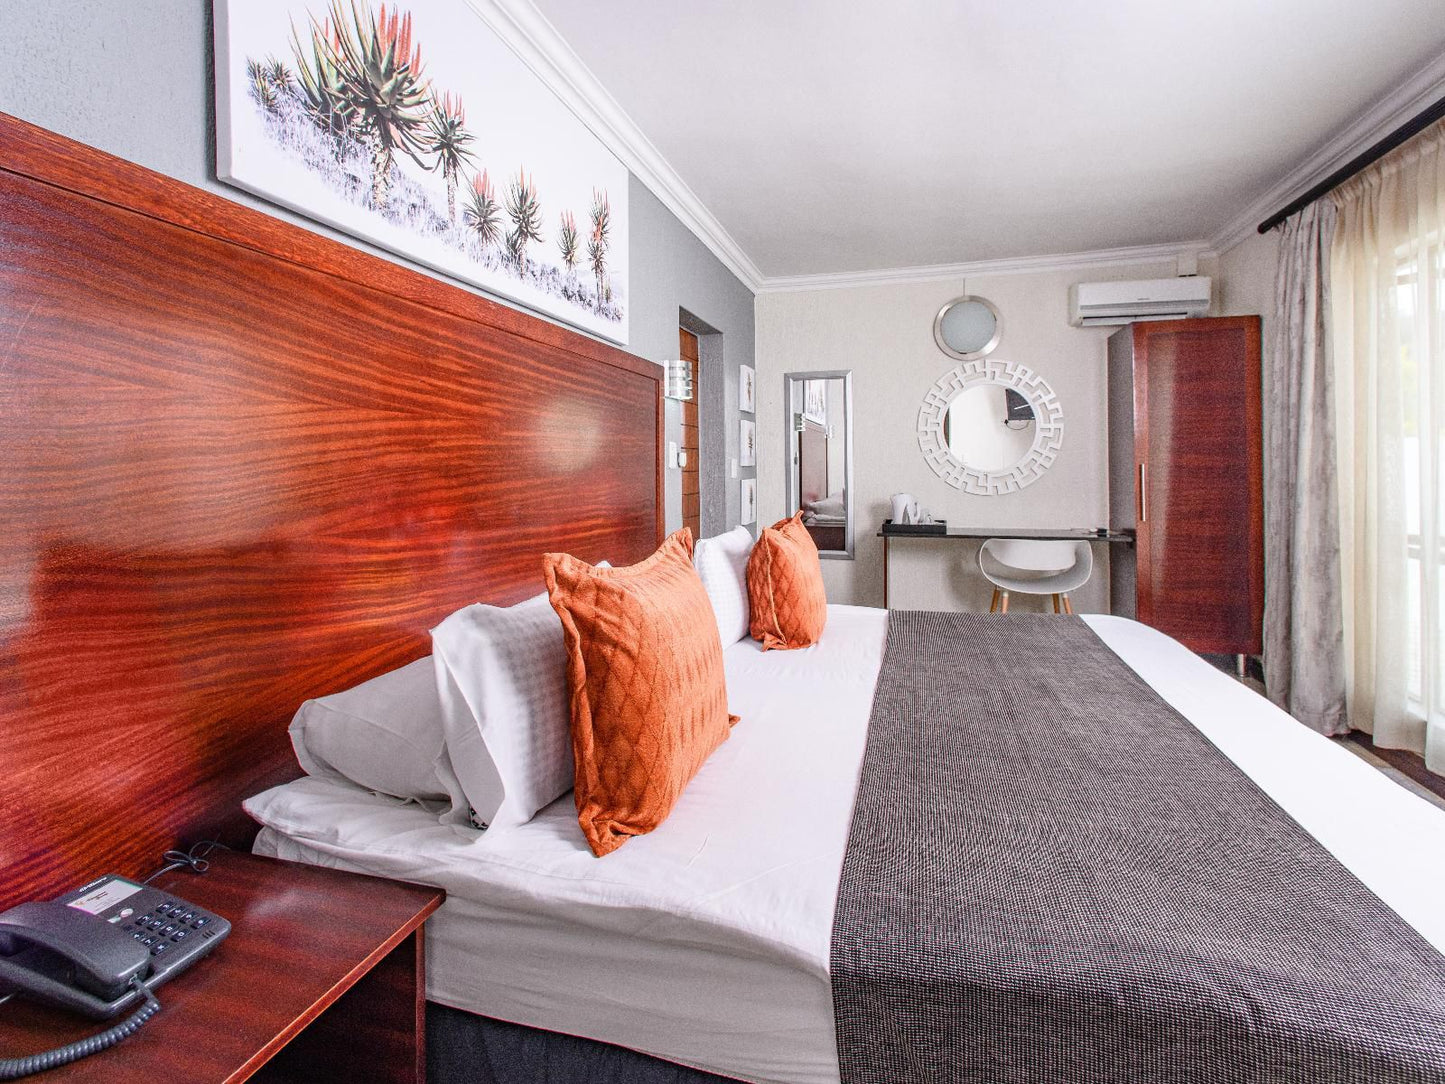 Khayalami Hotels Mbombela Sonheuwel Central Nelspruit Mpumalanga South Africa Bedroom